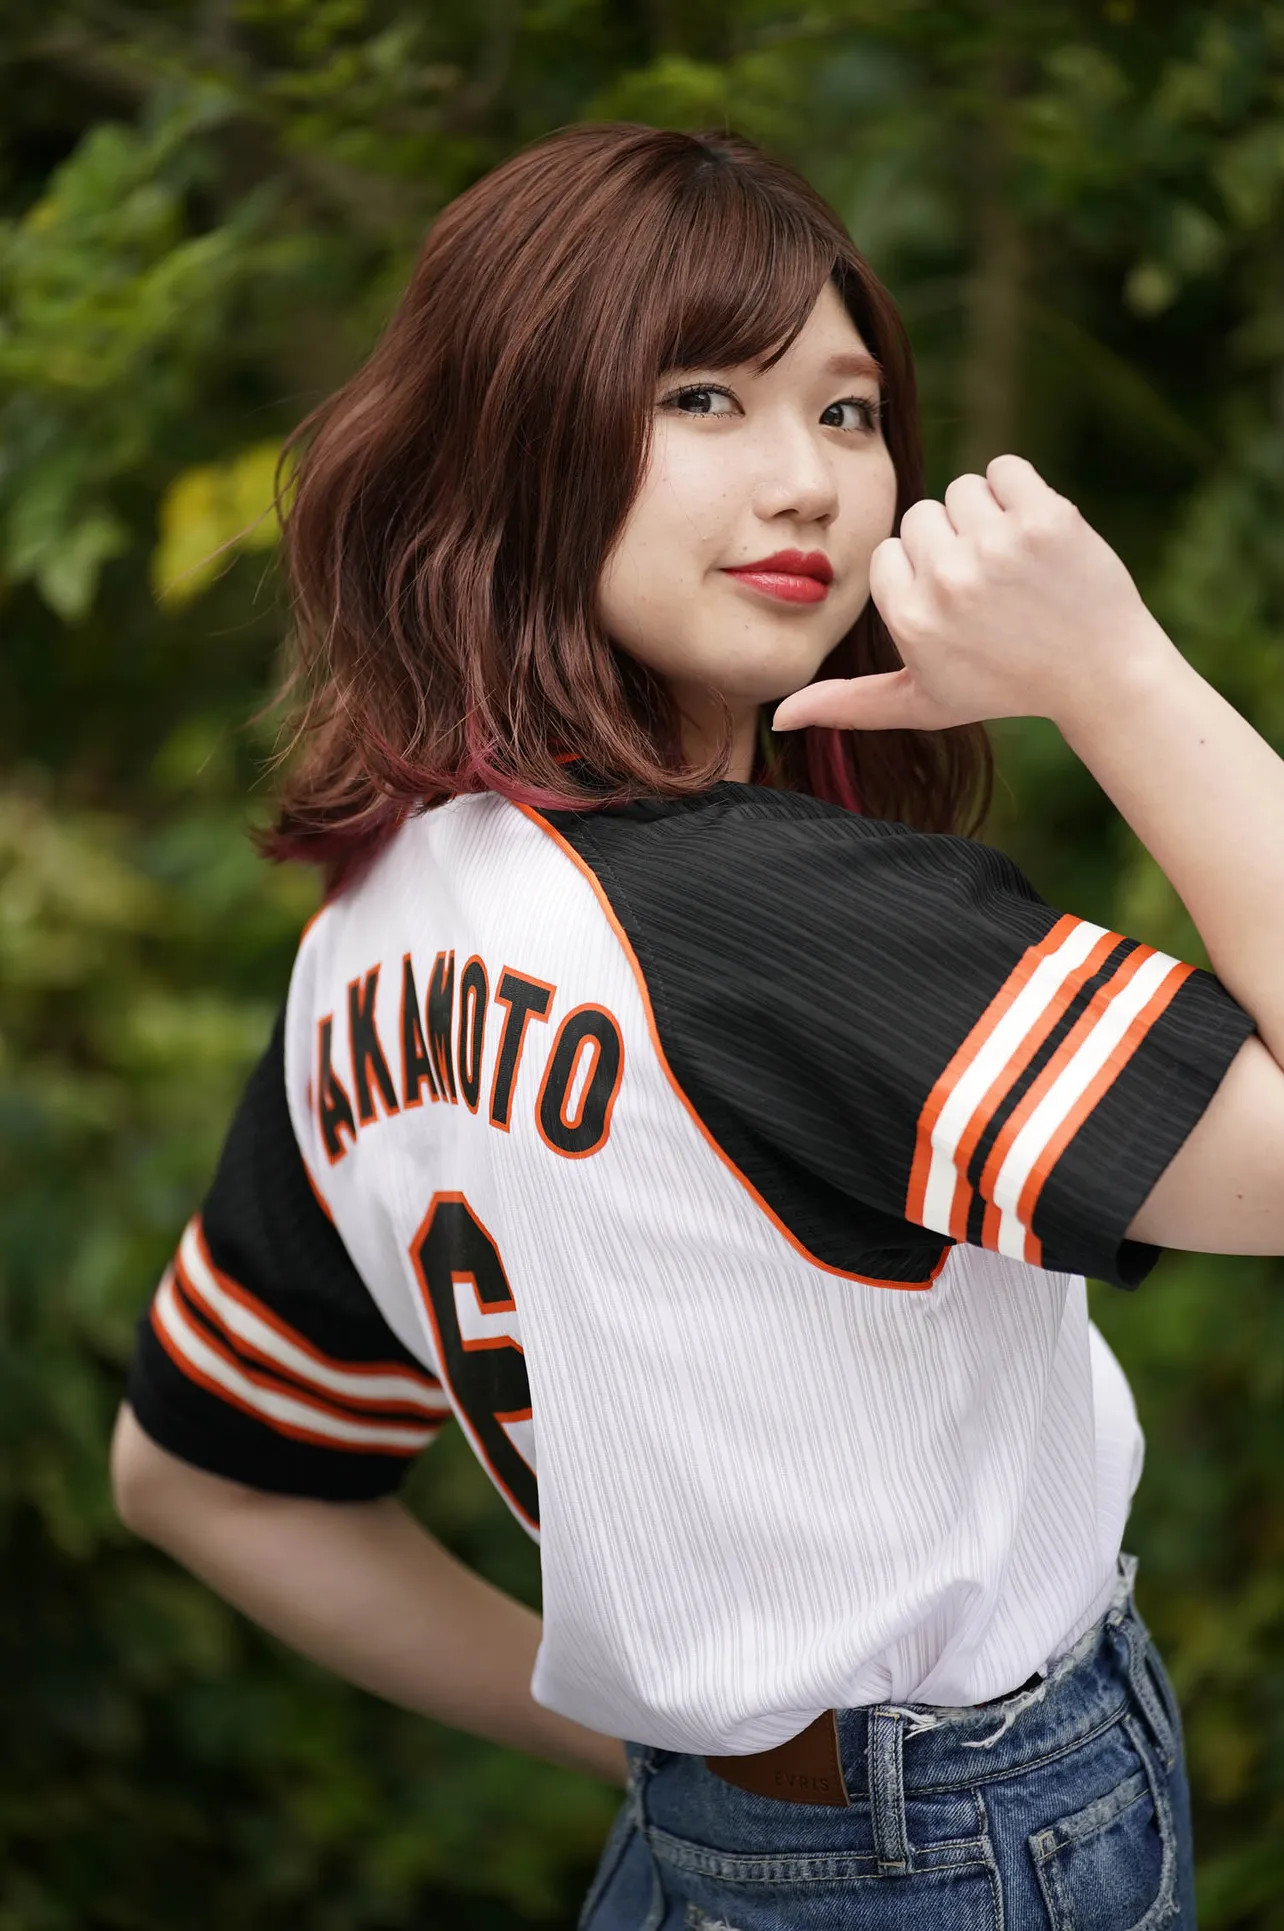 球場へ見にいったけど清宮幸太郎選手は高校時代からモノが違ったなど、高校野球好きをアピールしてくれた竹内朱莉